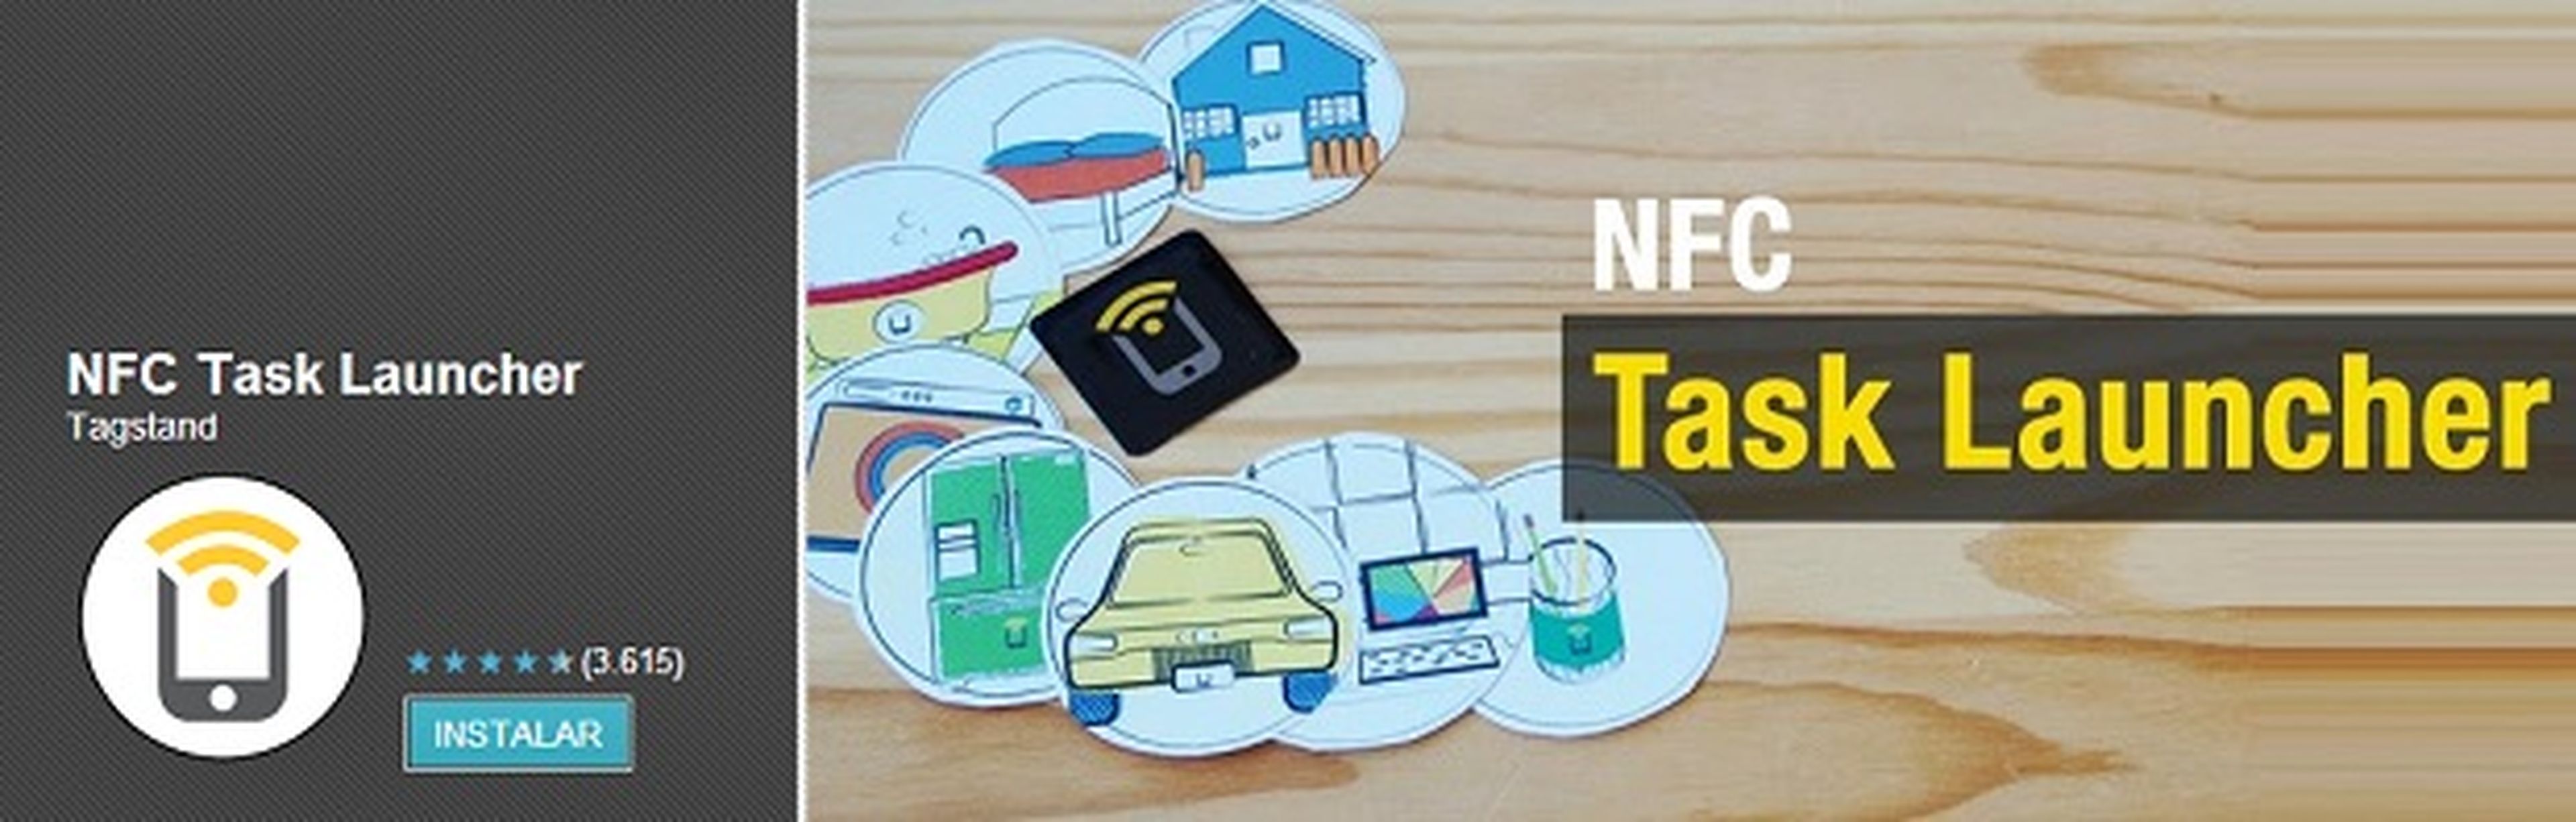 Las etiquetas NFC: cómo usarlas y para qué sirven